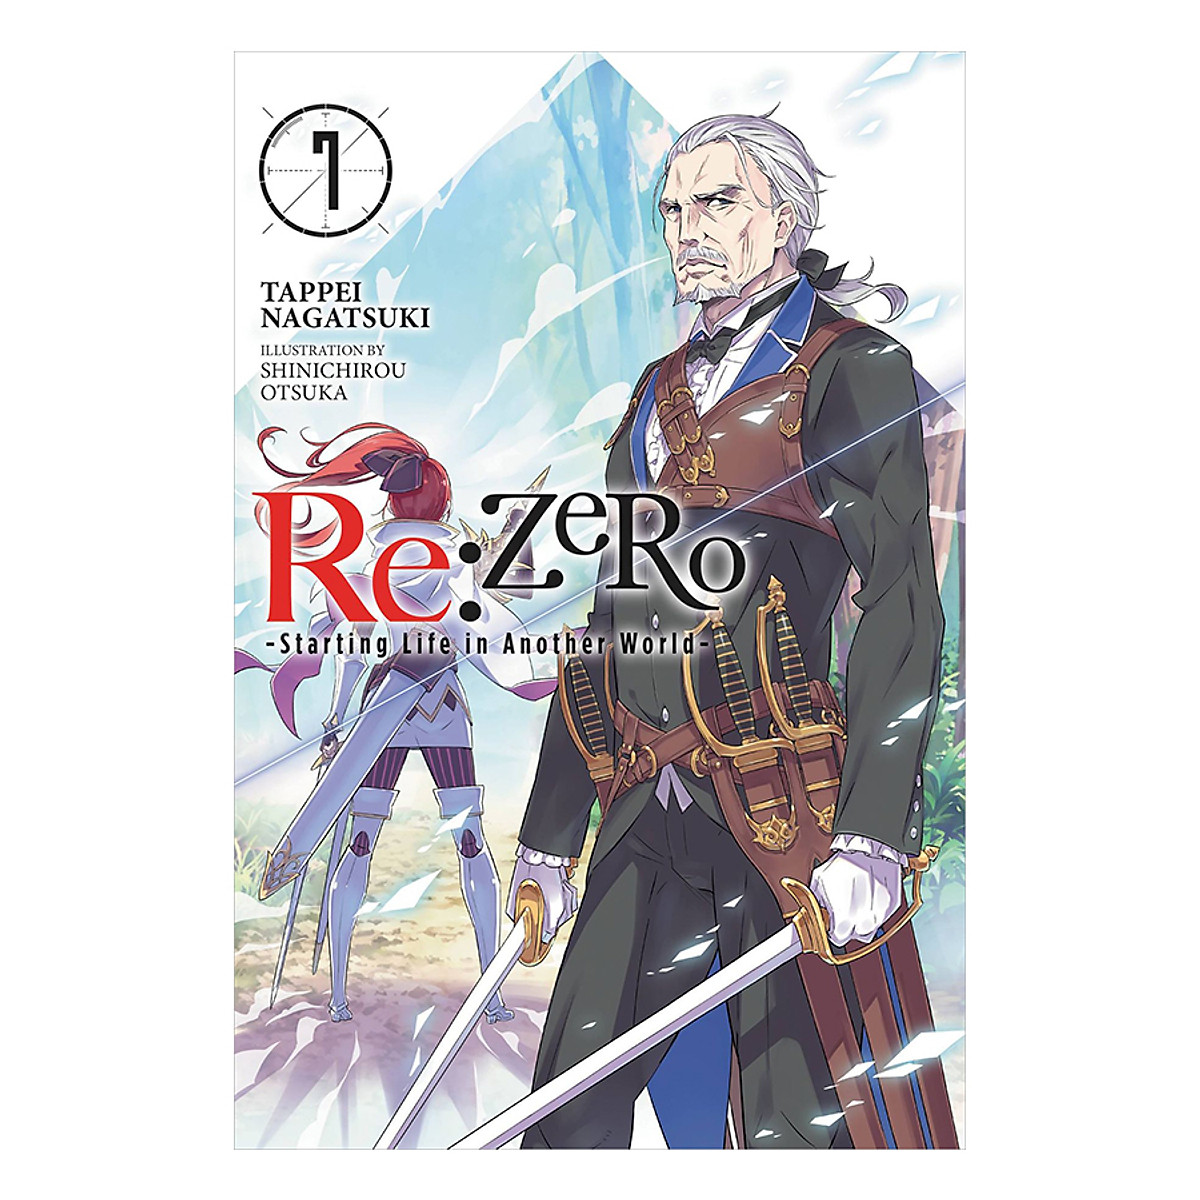 [Hàng thanh lý miễn đổi trả] Re:ZERO - Starting Life in Another World - Volume 07 (Light Novel) (Illustration by Shinichirou Otsuka)